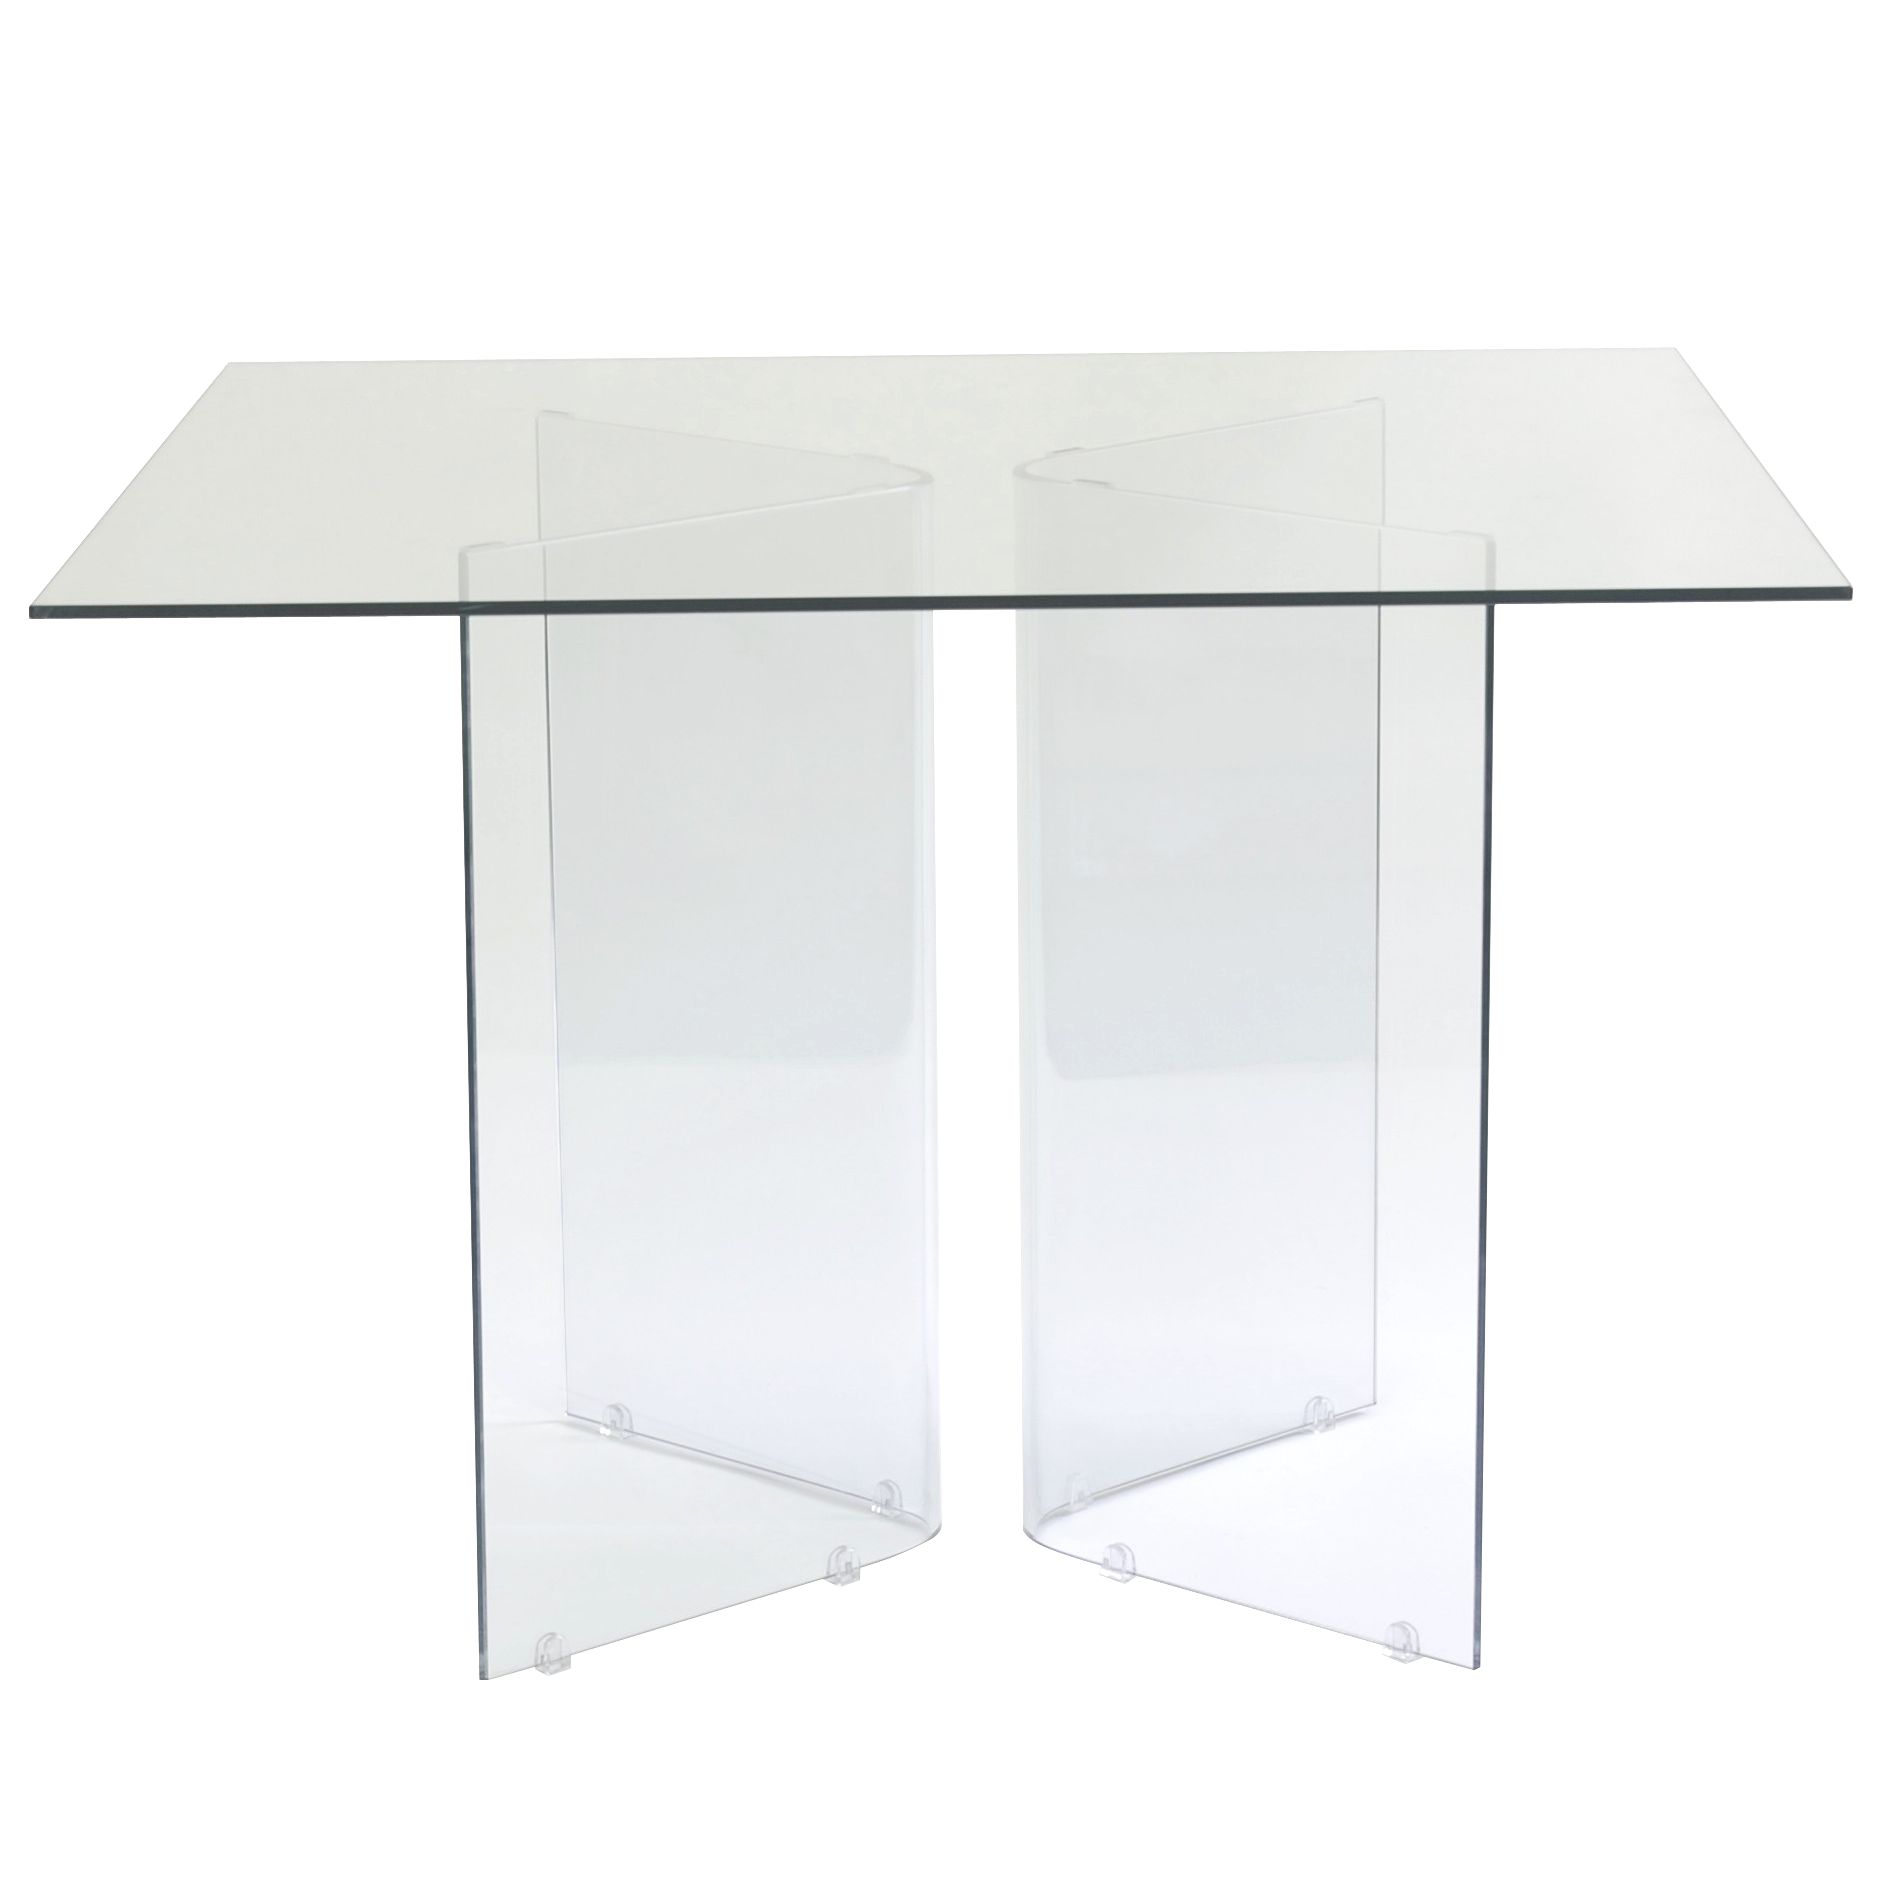 Apollo Square Table, 110cm